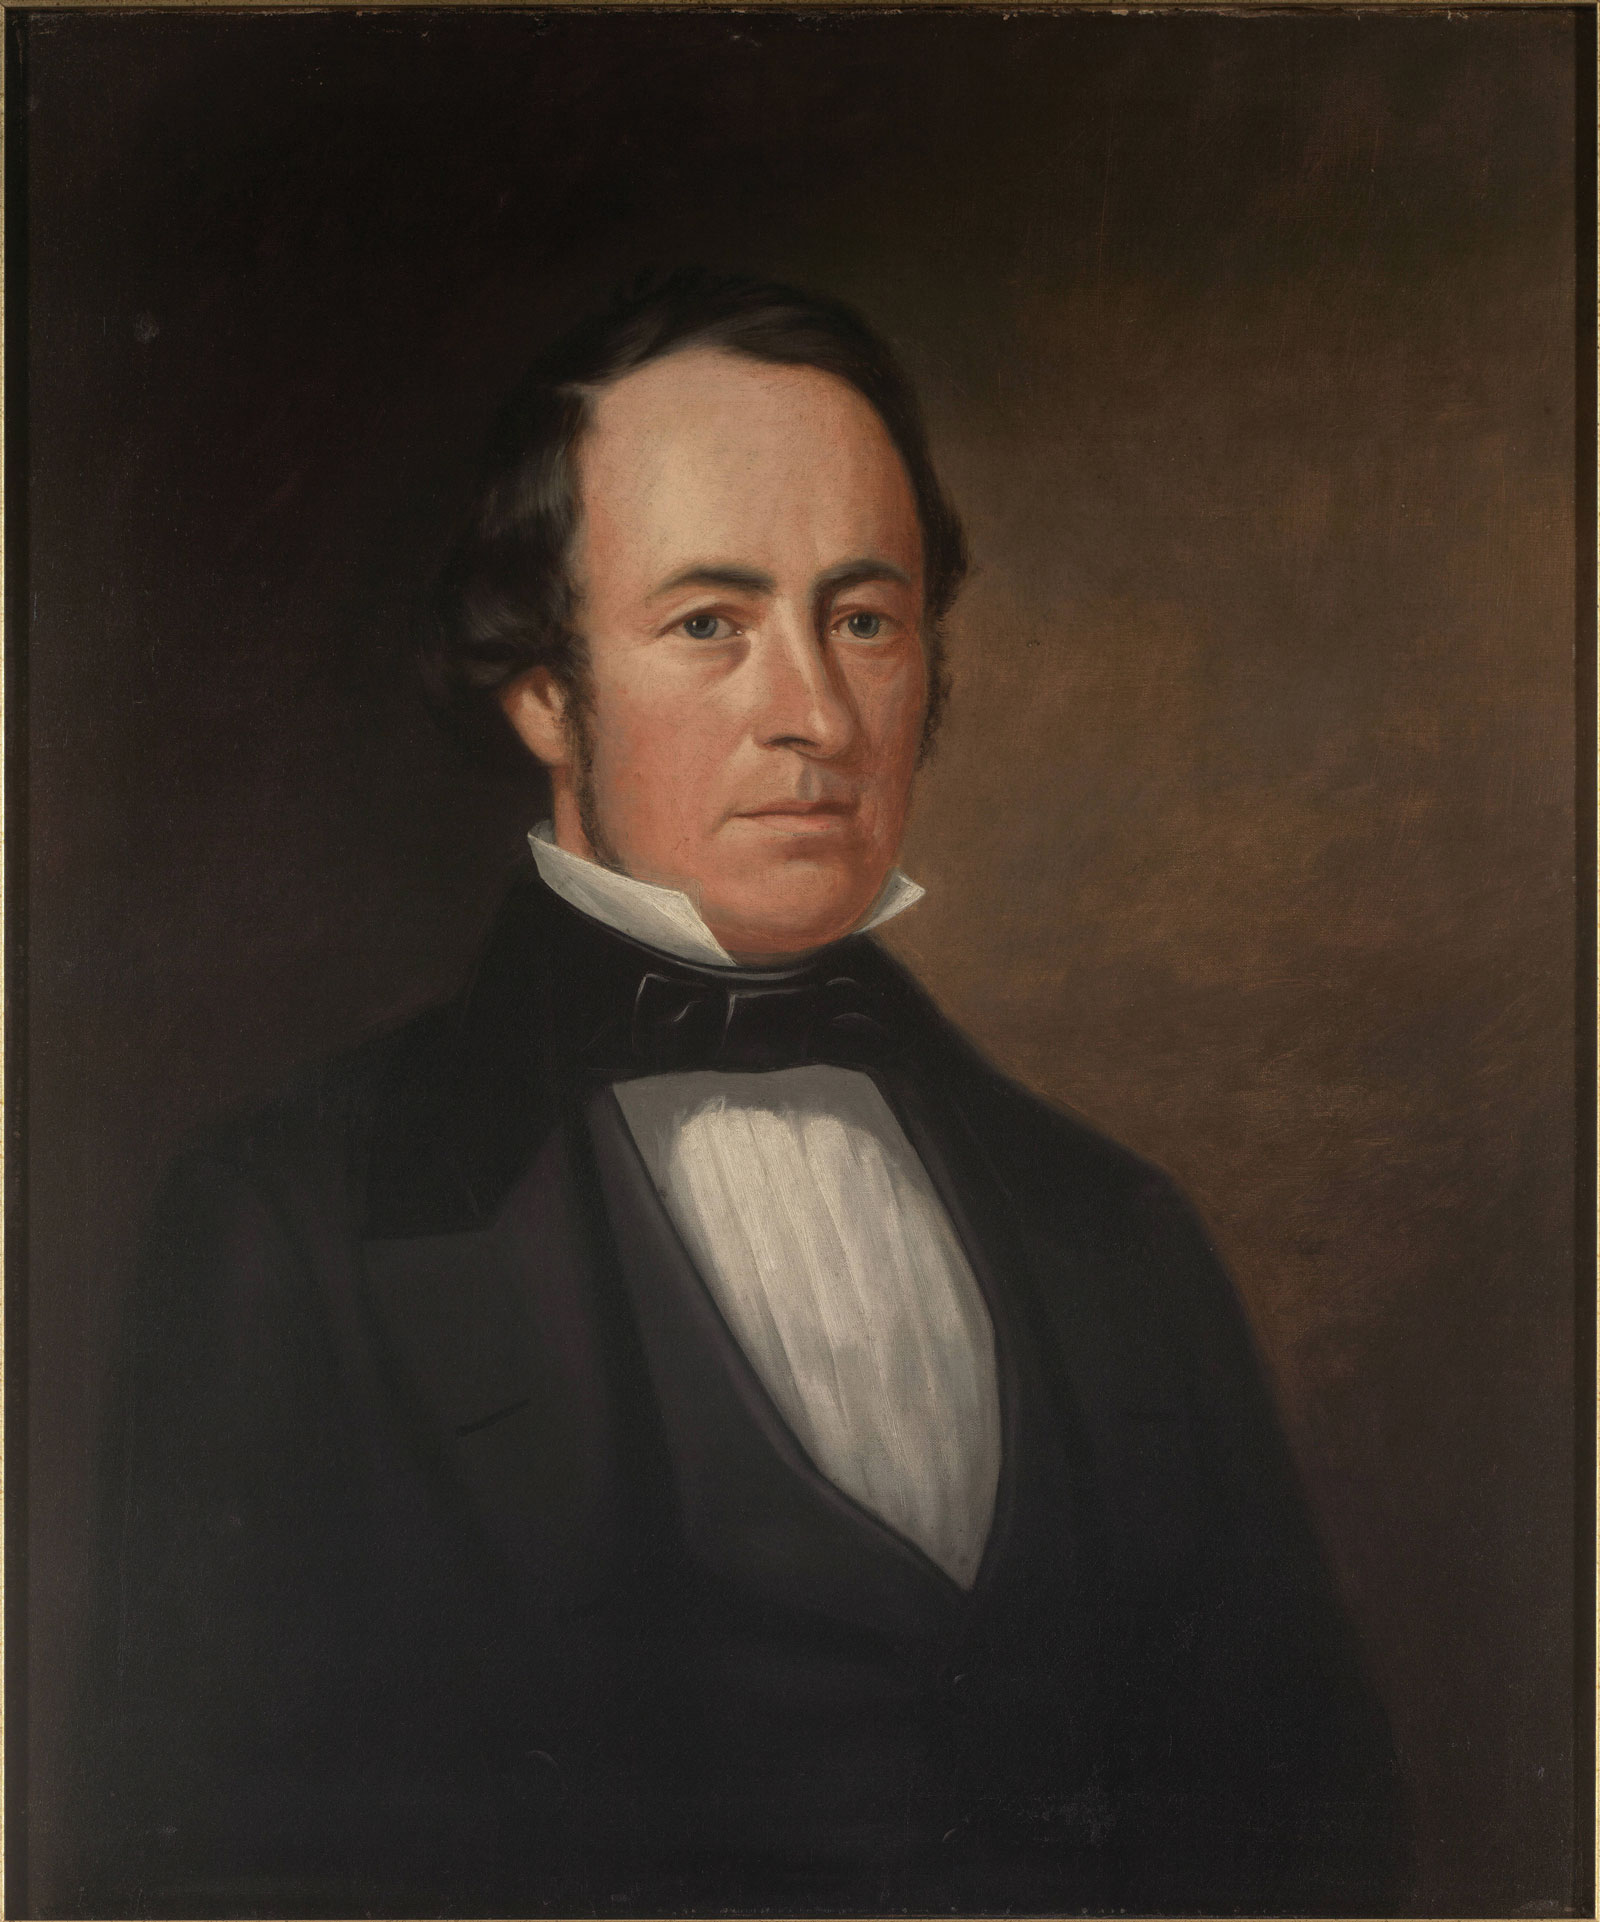 Portrait of James Leachman Stephens by George Caleb Bingham.